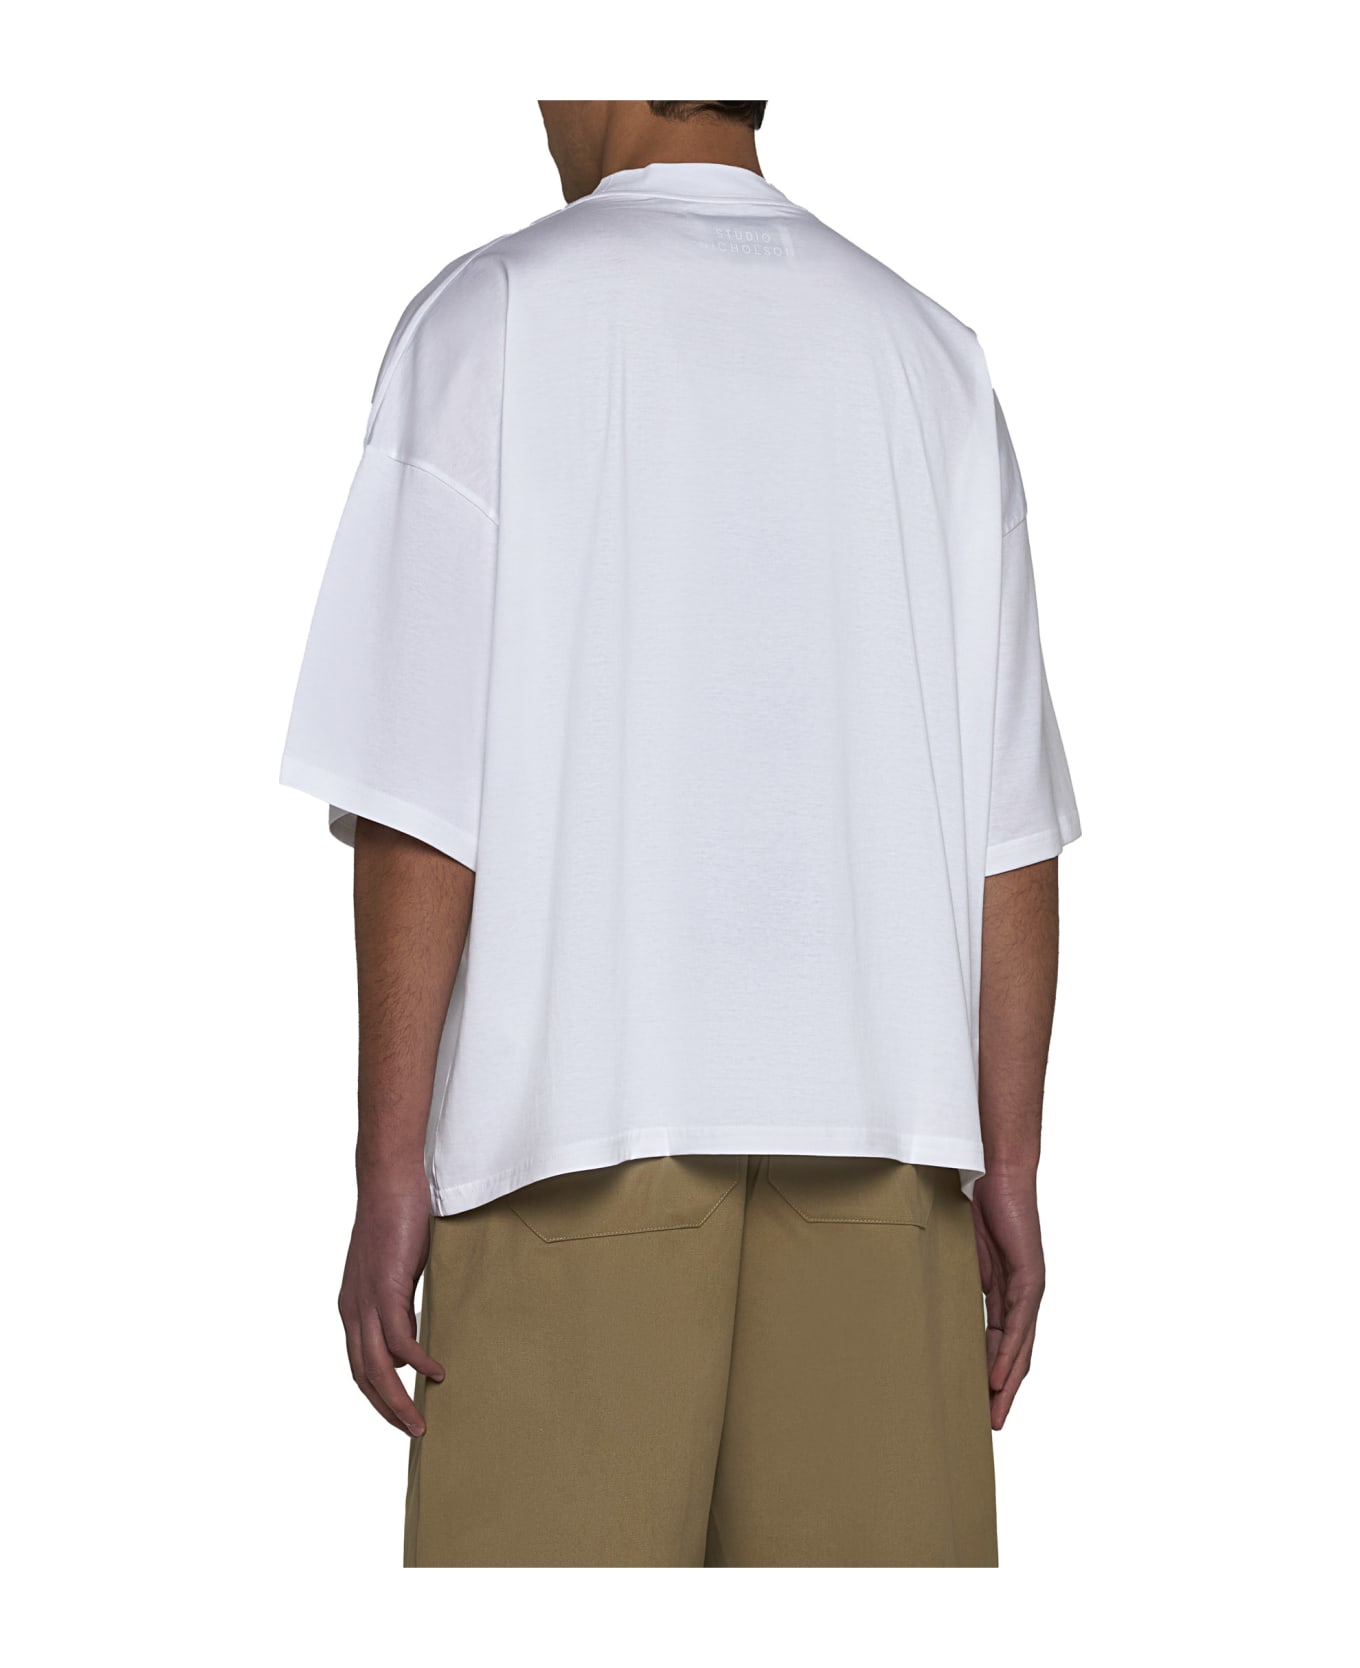 Studio Nicholson T-Shirt - Optic white シャツ